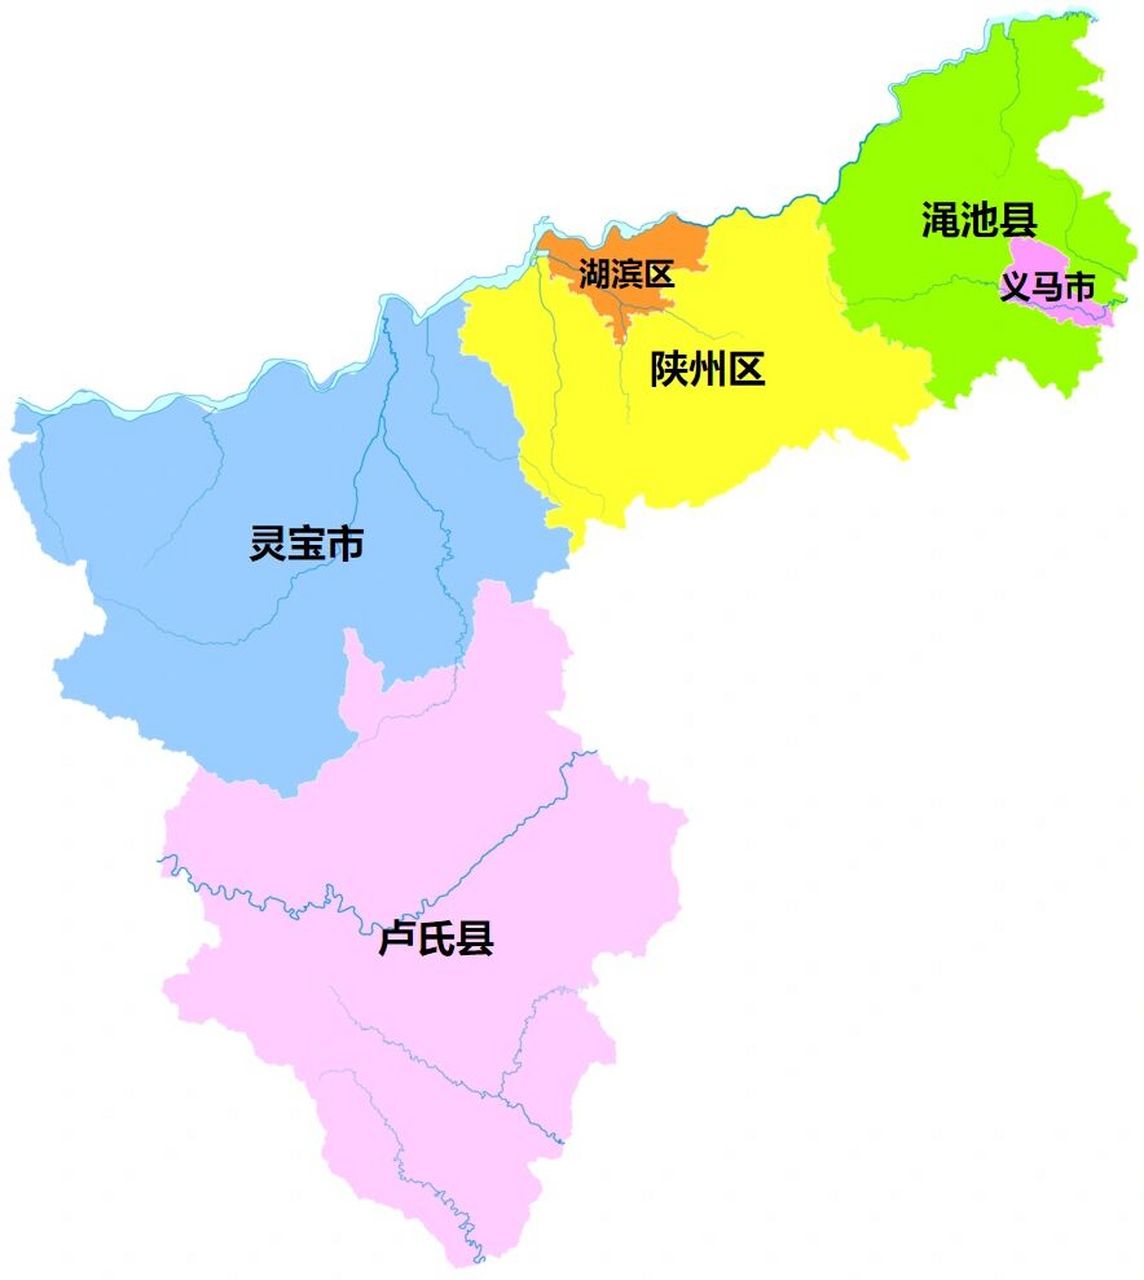 三门峡全市划分为 2个区:湖滨区,陕州区; 2个县:卢氏县,渑池县; 2